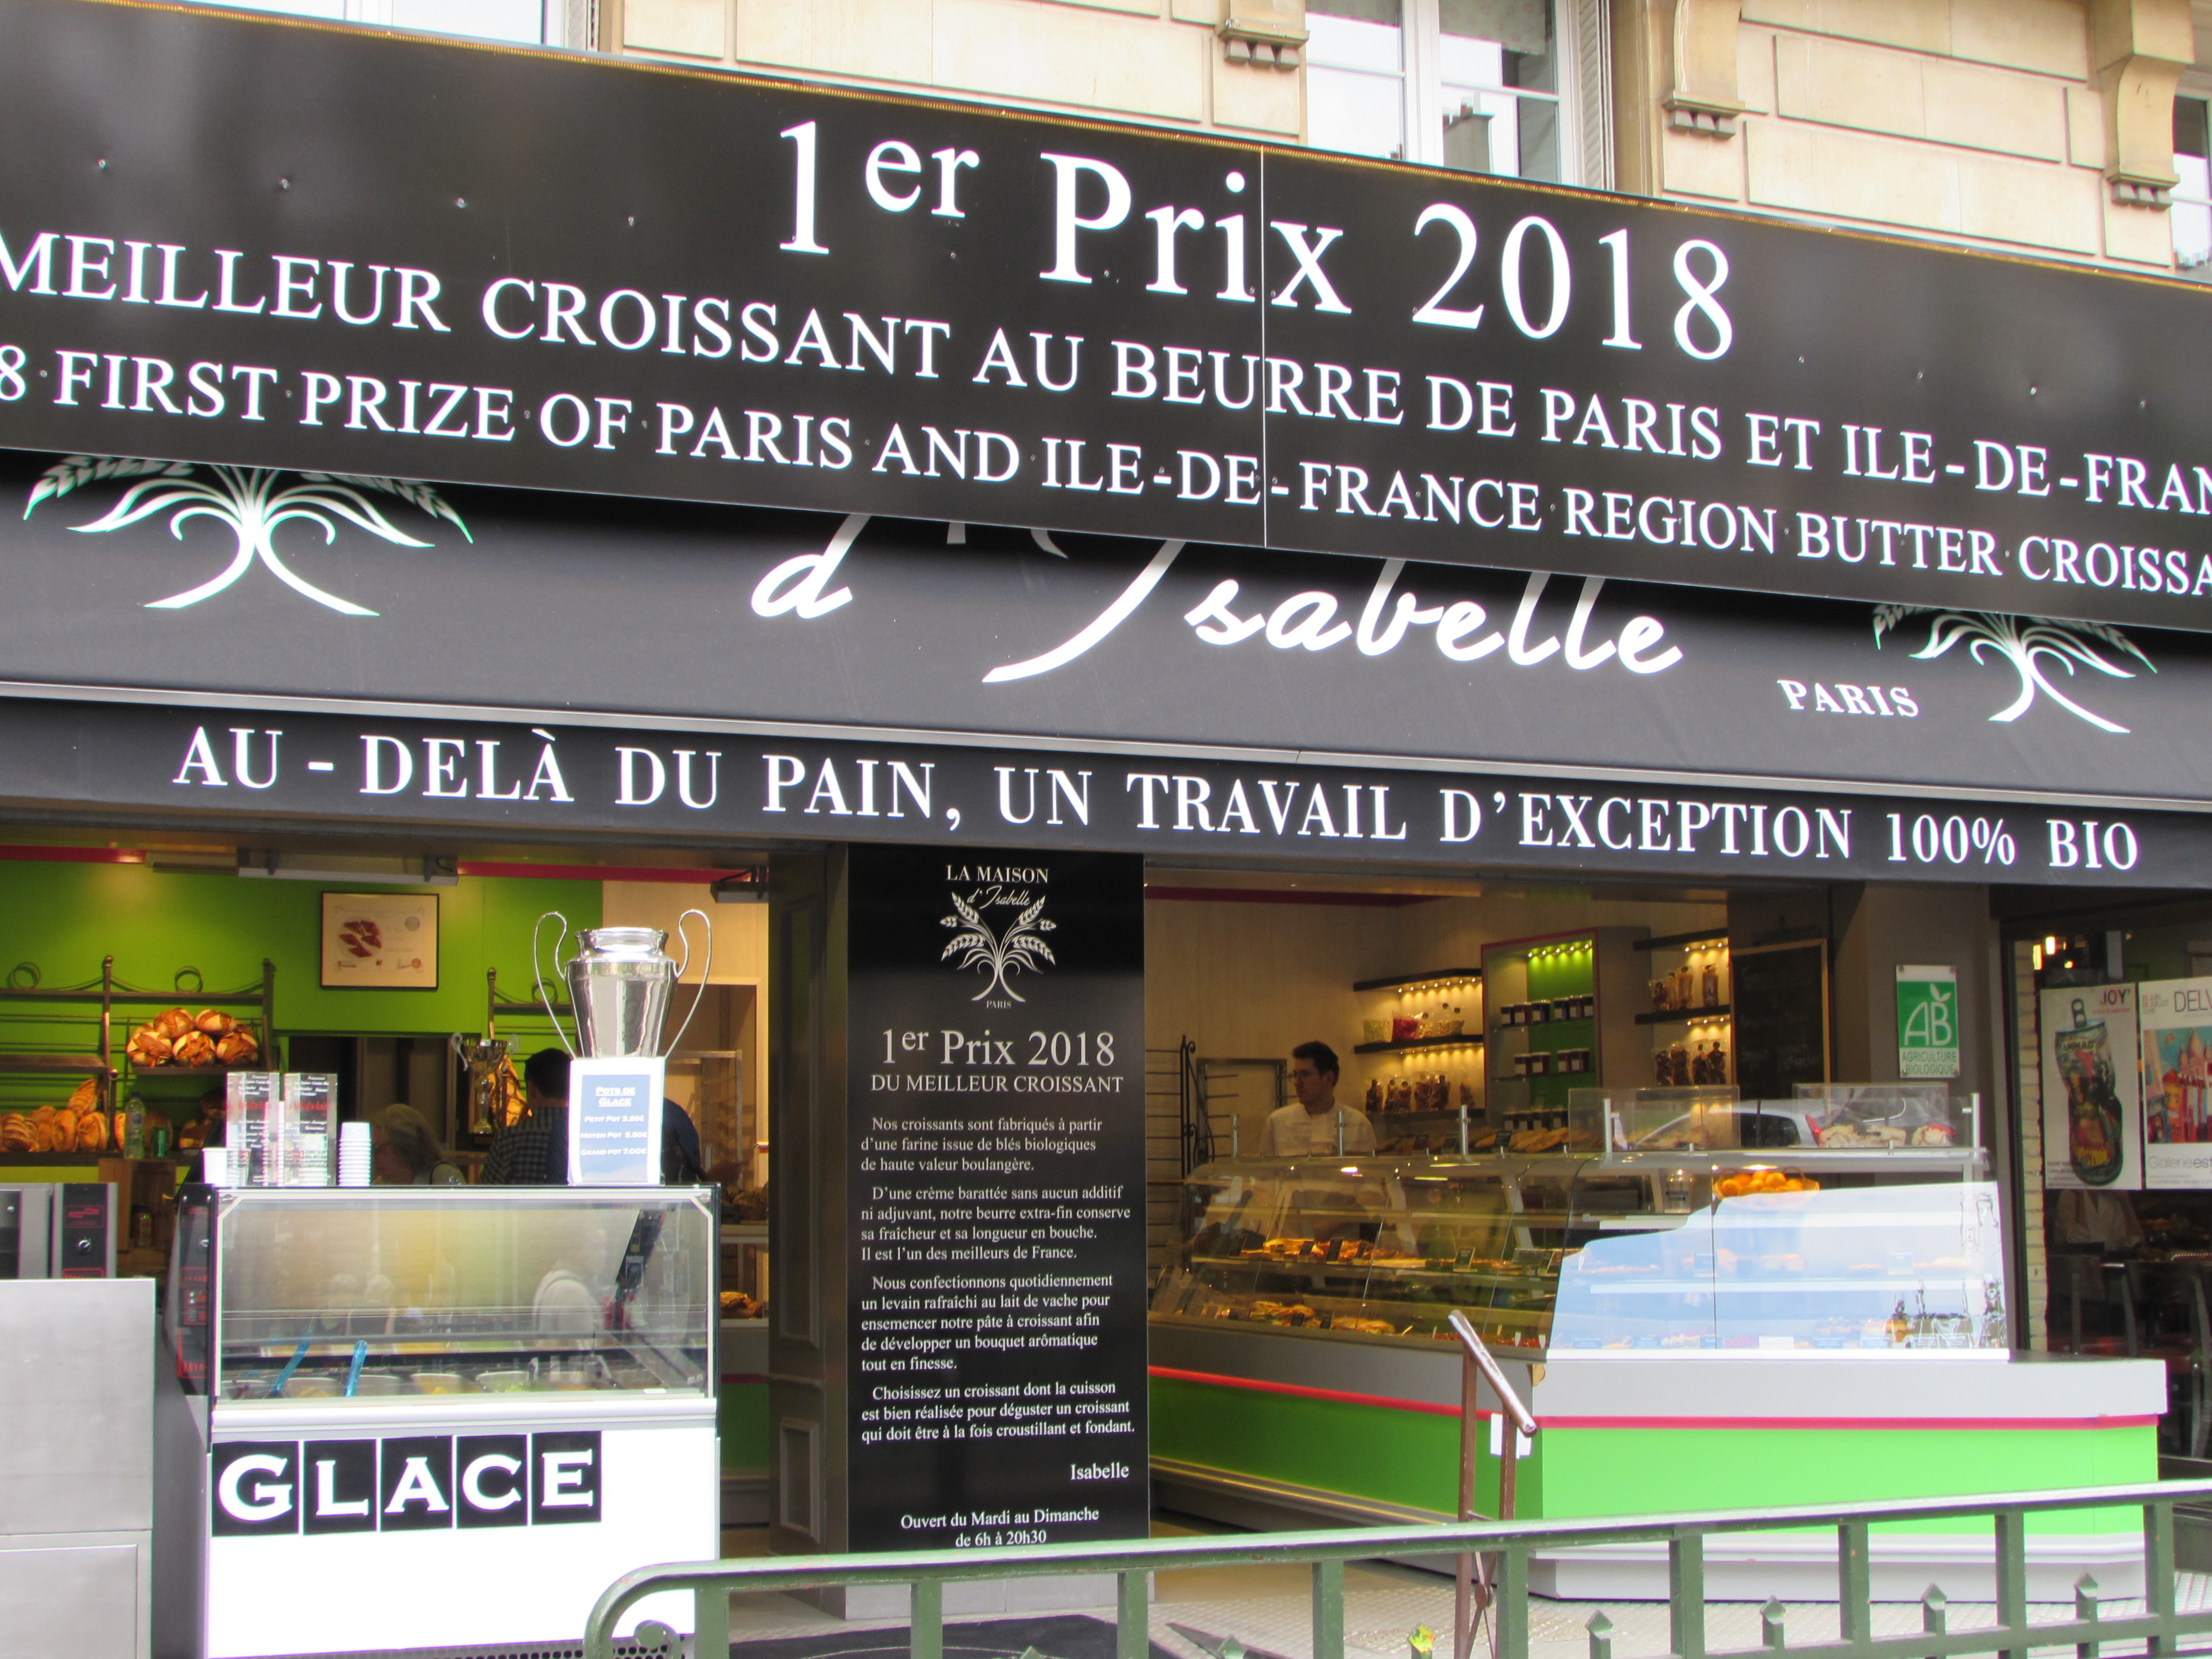 Paris best croissant bakery